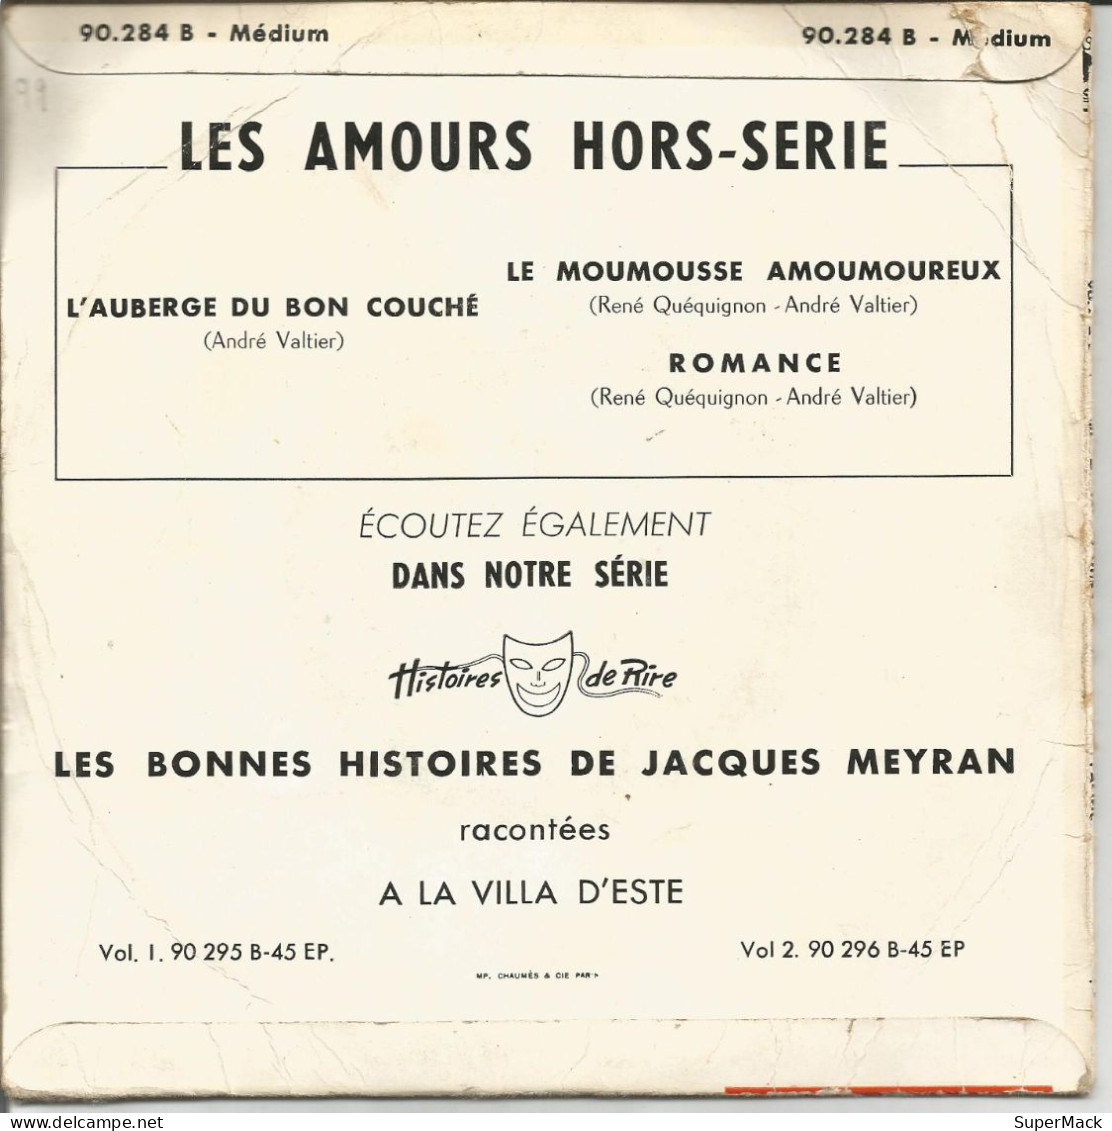 45T André Valtier - Les Amours Hors Série - Pacific 90.284B - 1958 - Collectors